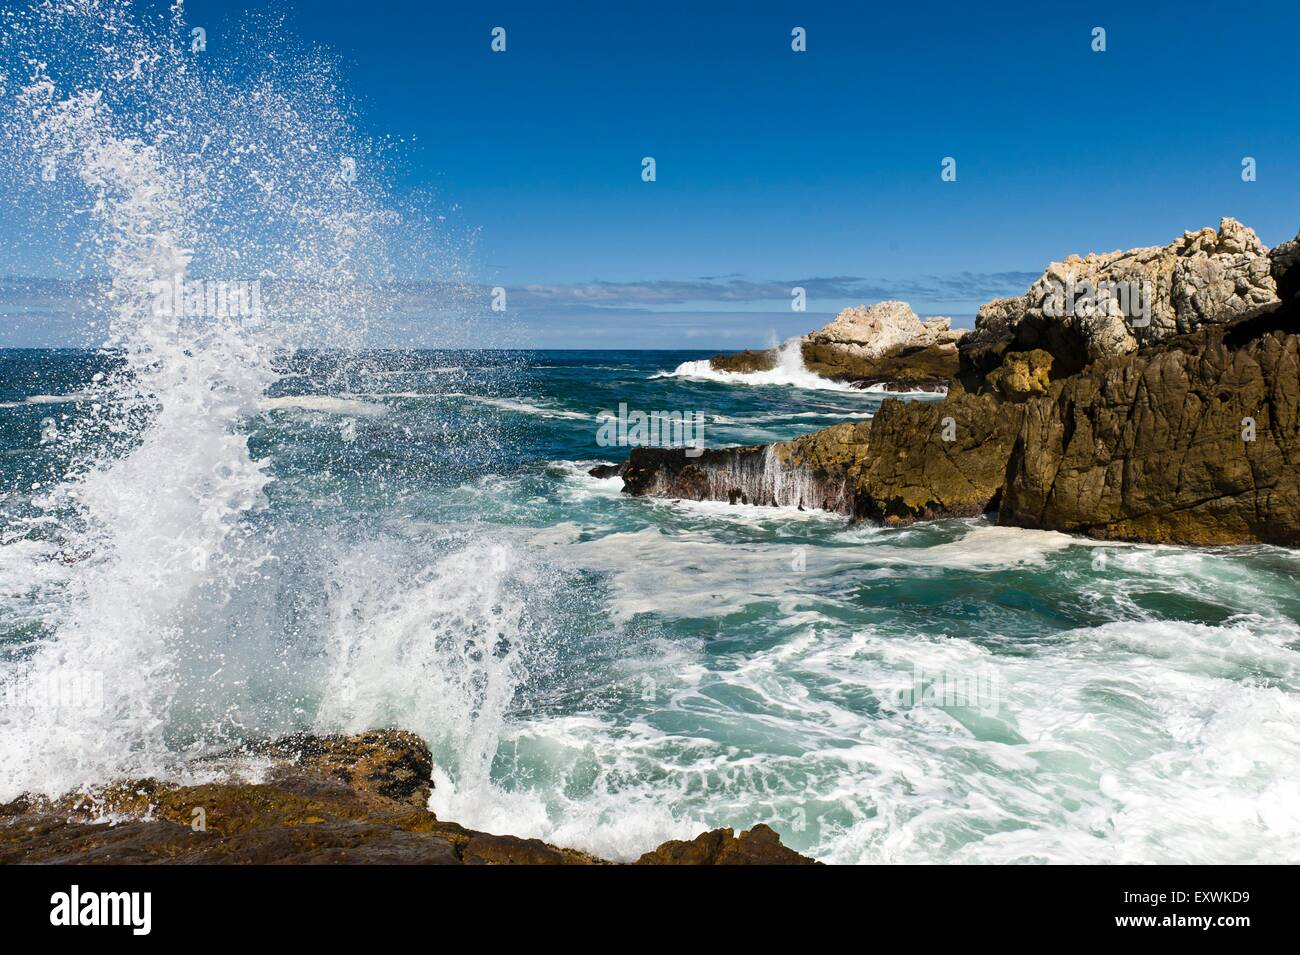 L'écrasement de l'onde sur les roches, Hermanus, Afrique du Sud Banque D'Images